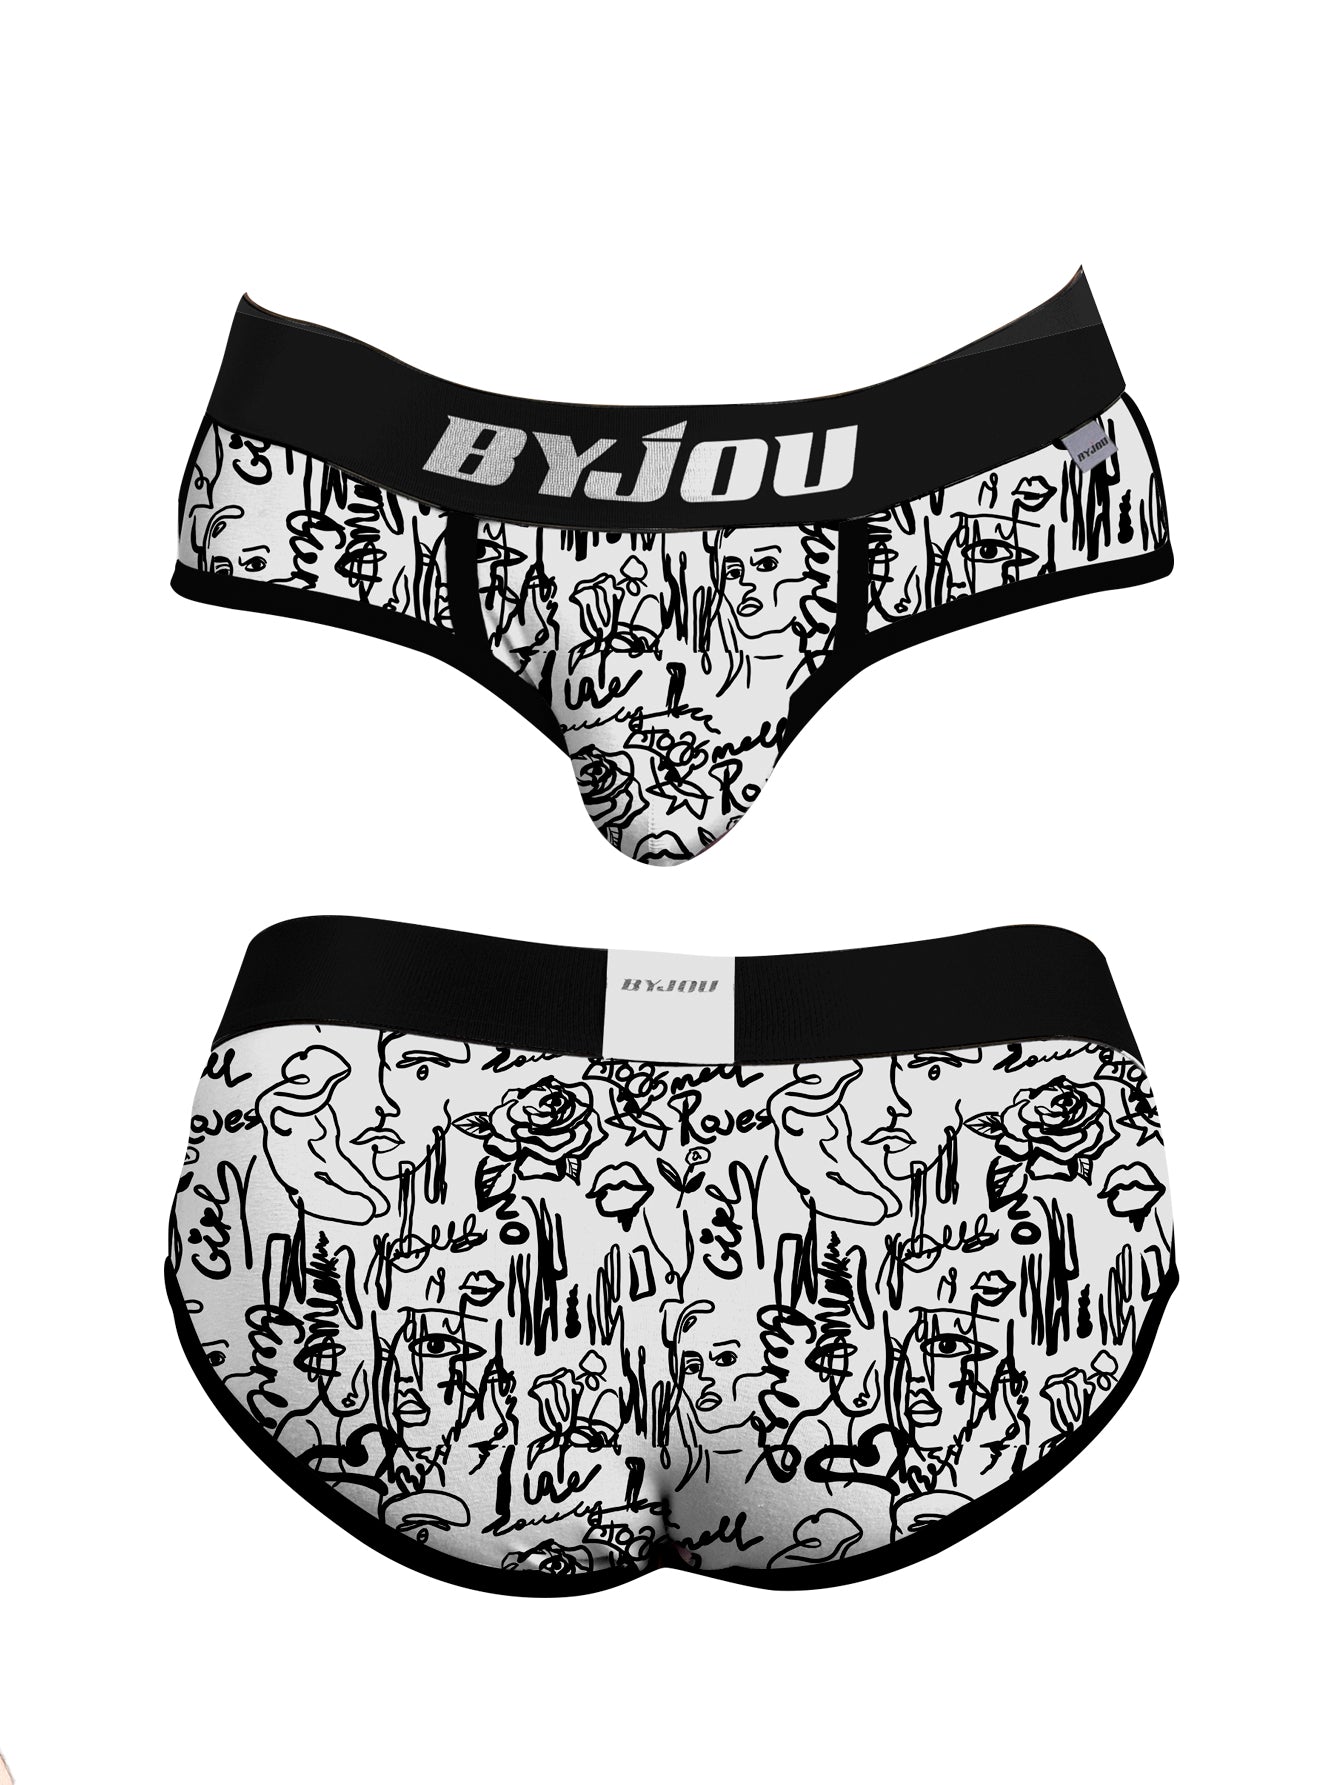 Boxer Brief Men Nautico  Byjou Underwear Calzon BNAUMX022